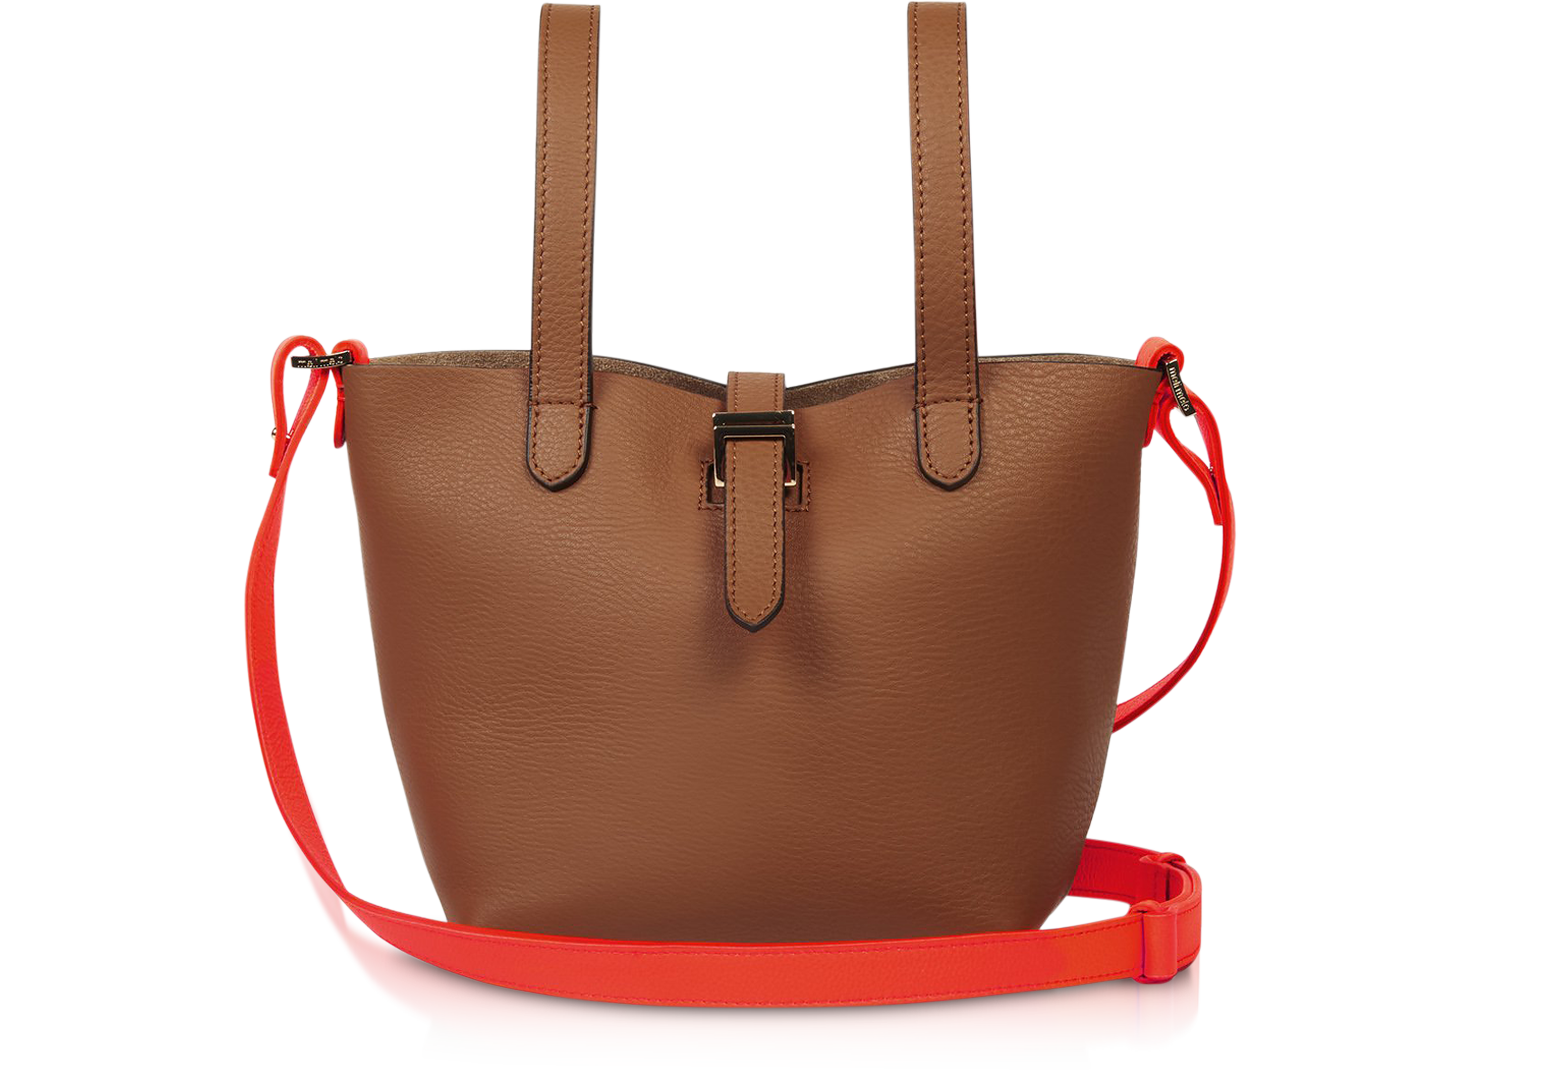 Thela mini bag tan, italian handbag